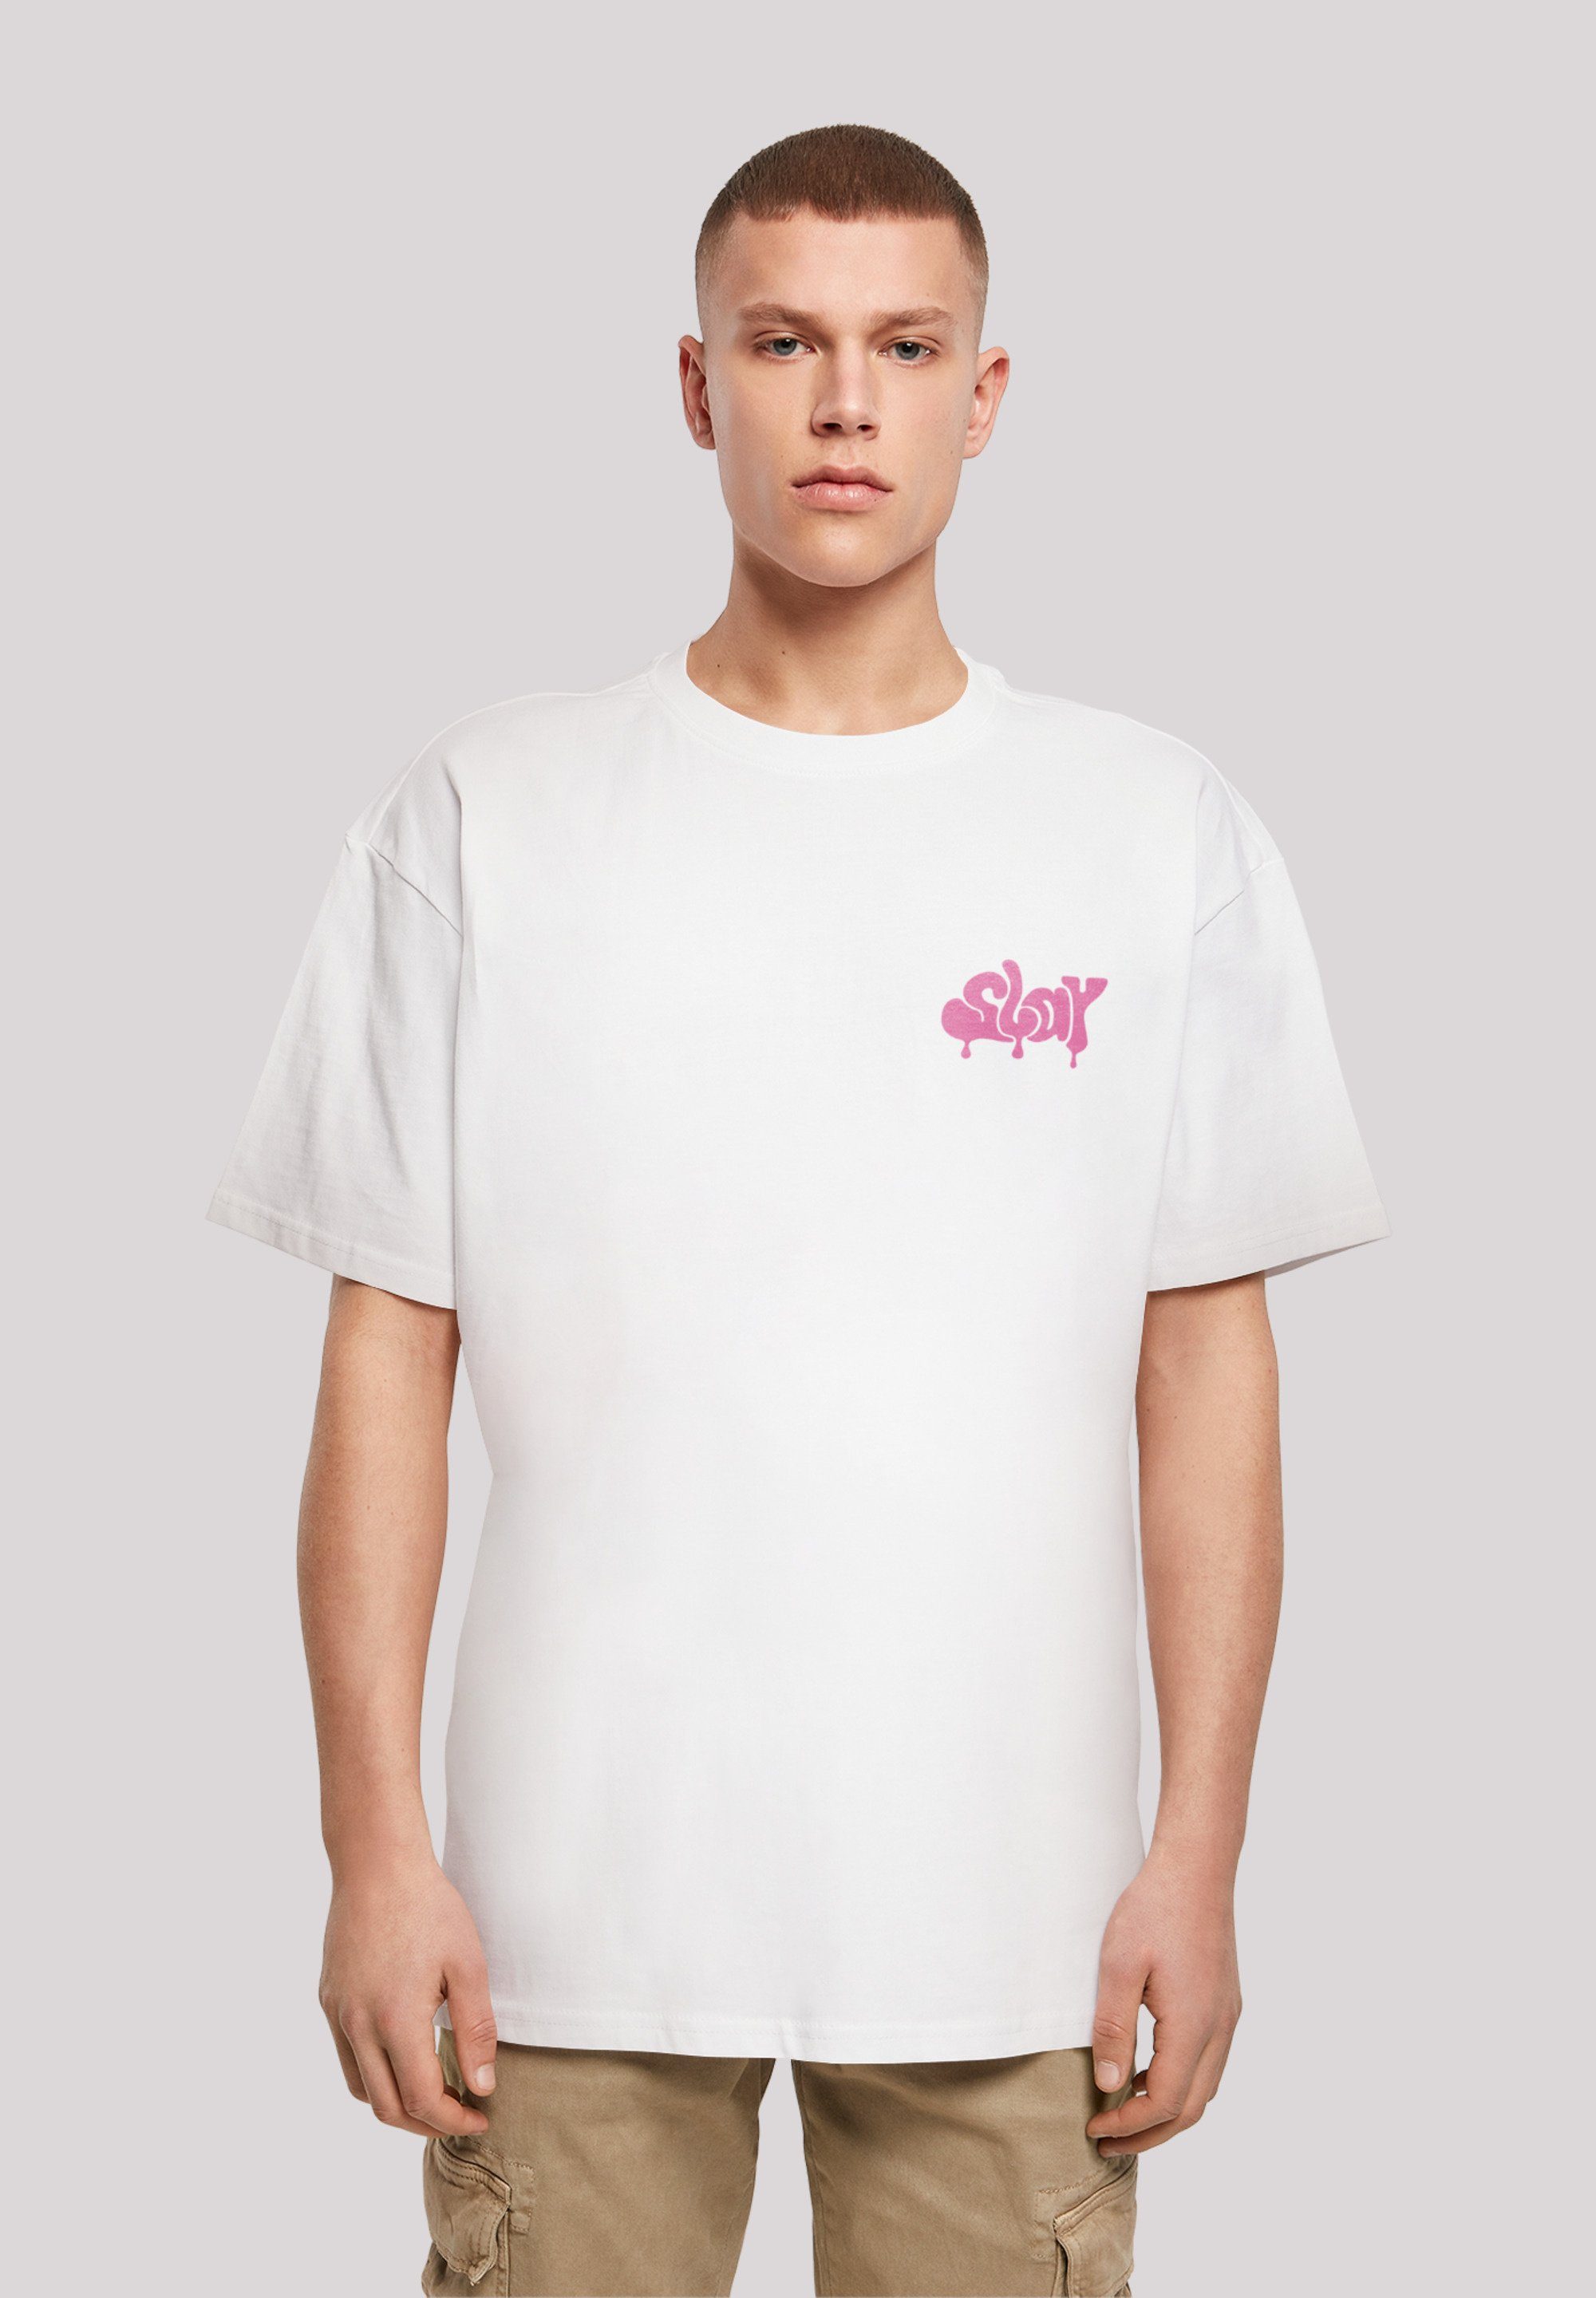 SLAY F4NT4STIC T-Shirt Pink weiß Print Jugenwort